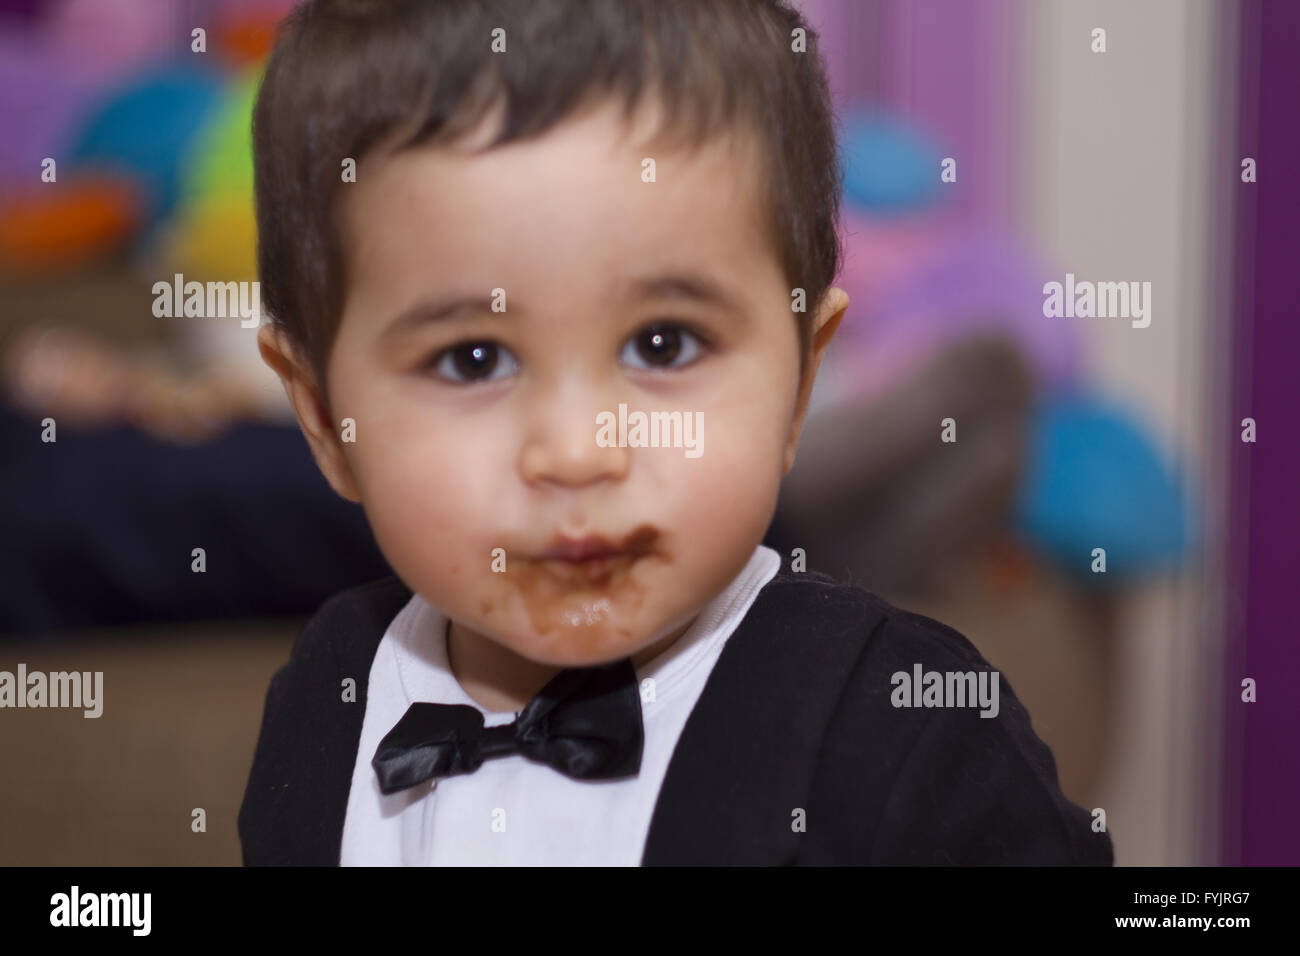 Adorabili happy baby mangiando cioccolato, indossa una tuta e il filtro bow tie Foto Stock